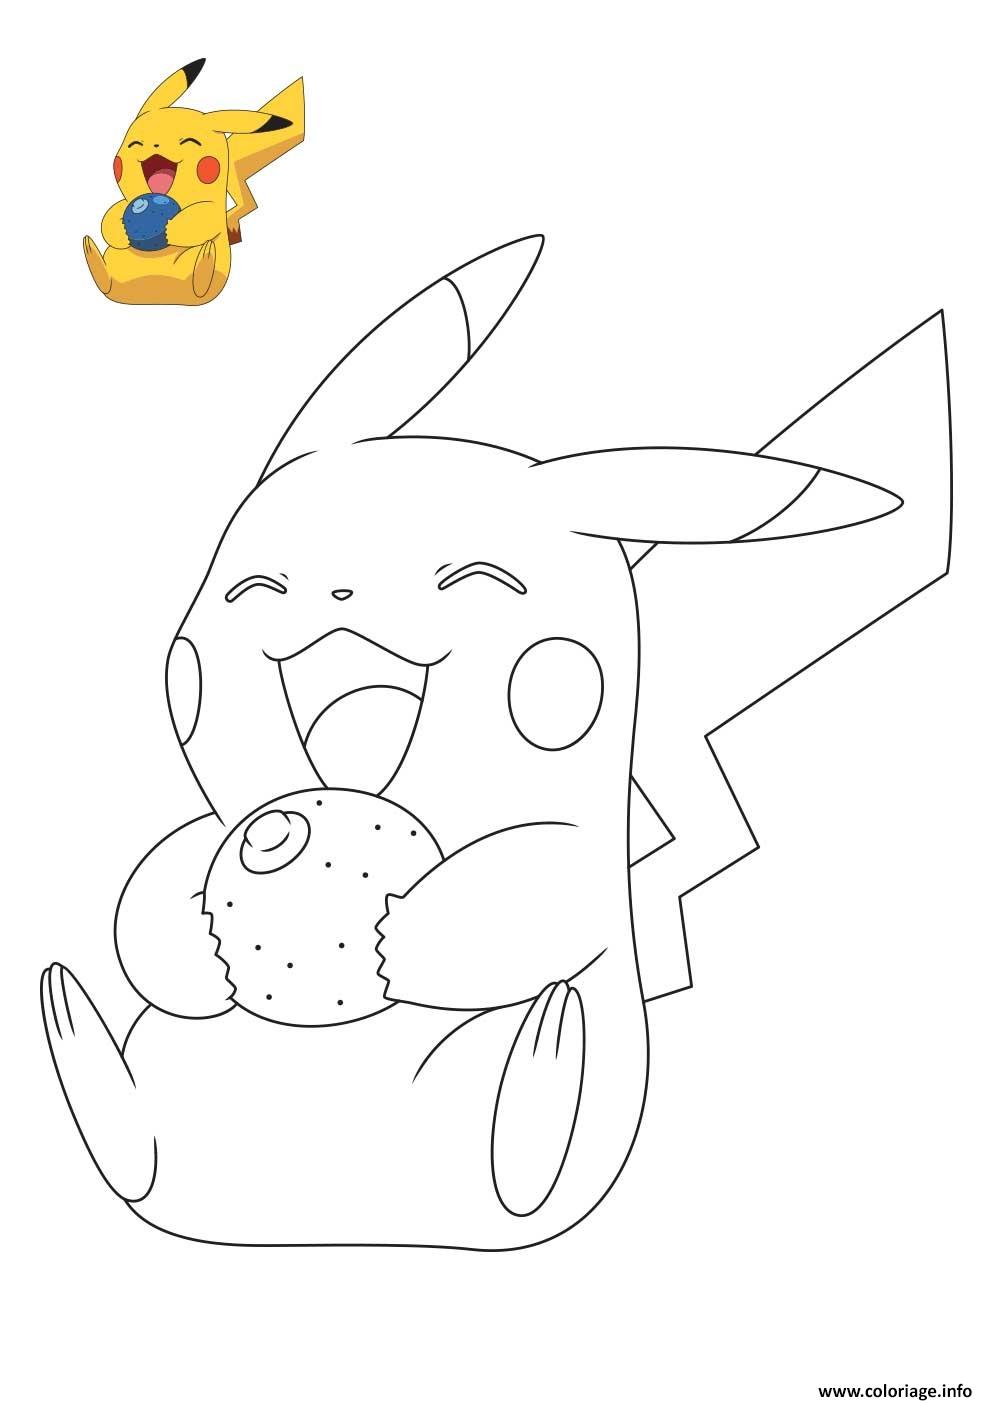 Dessin pokemon pikachu entrain de rigoler Coloriage Gratuit à Imprimer